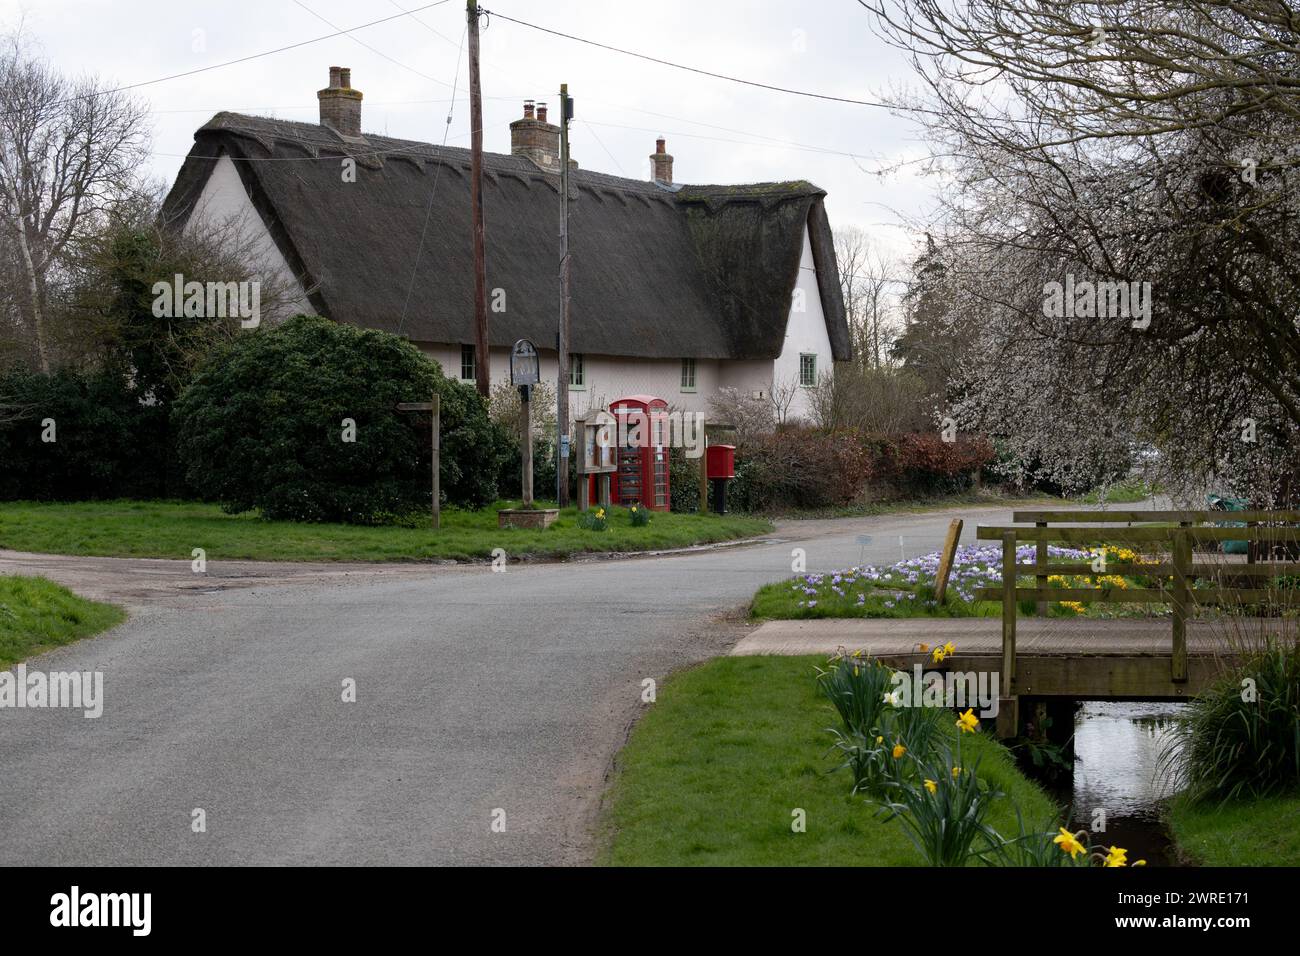 Molesworth village, Cambridgeshire, England, UK Stock Photo